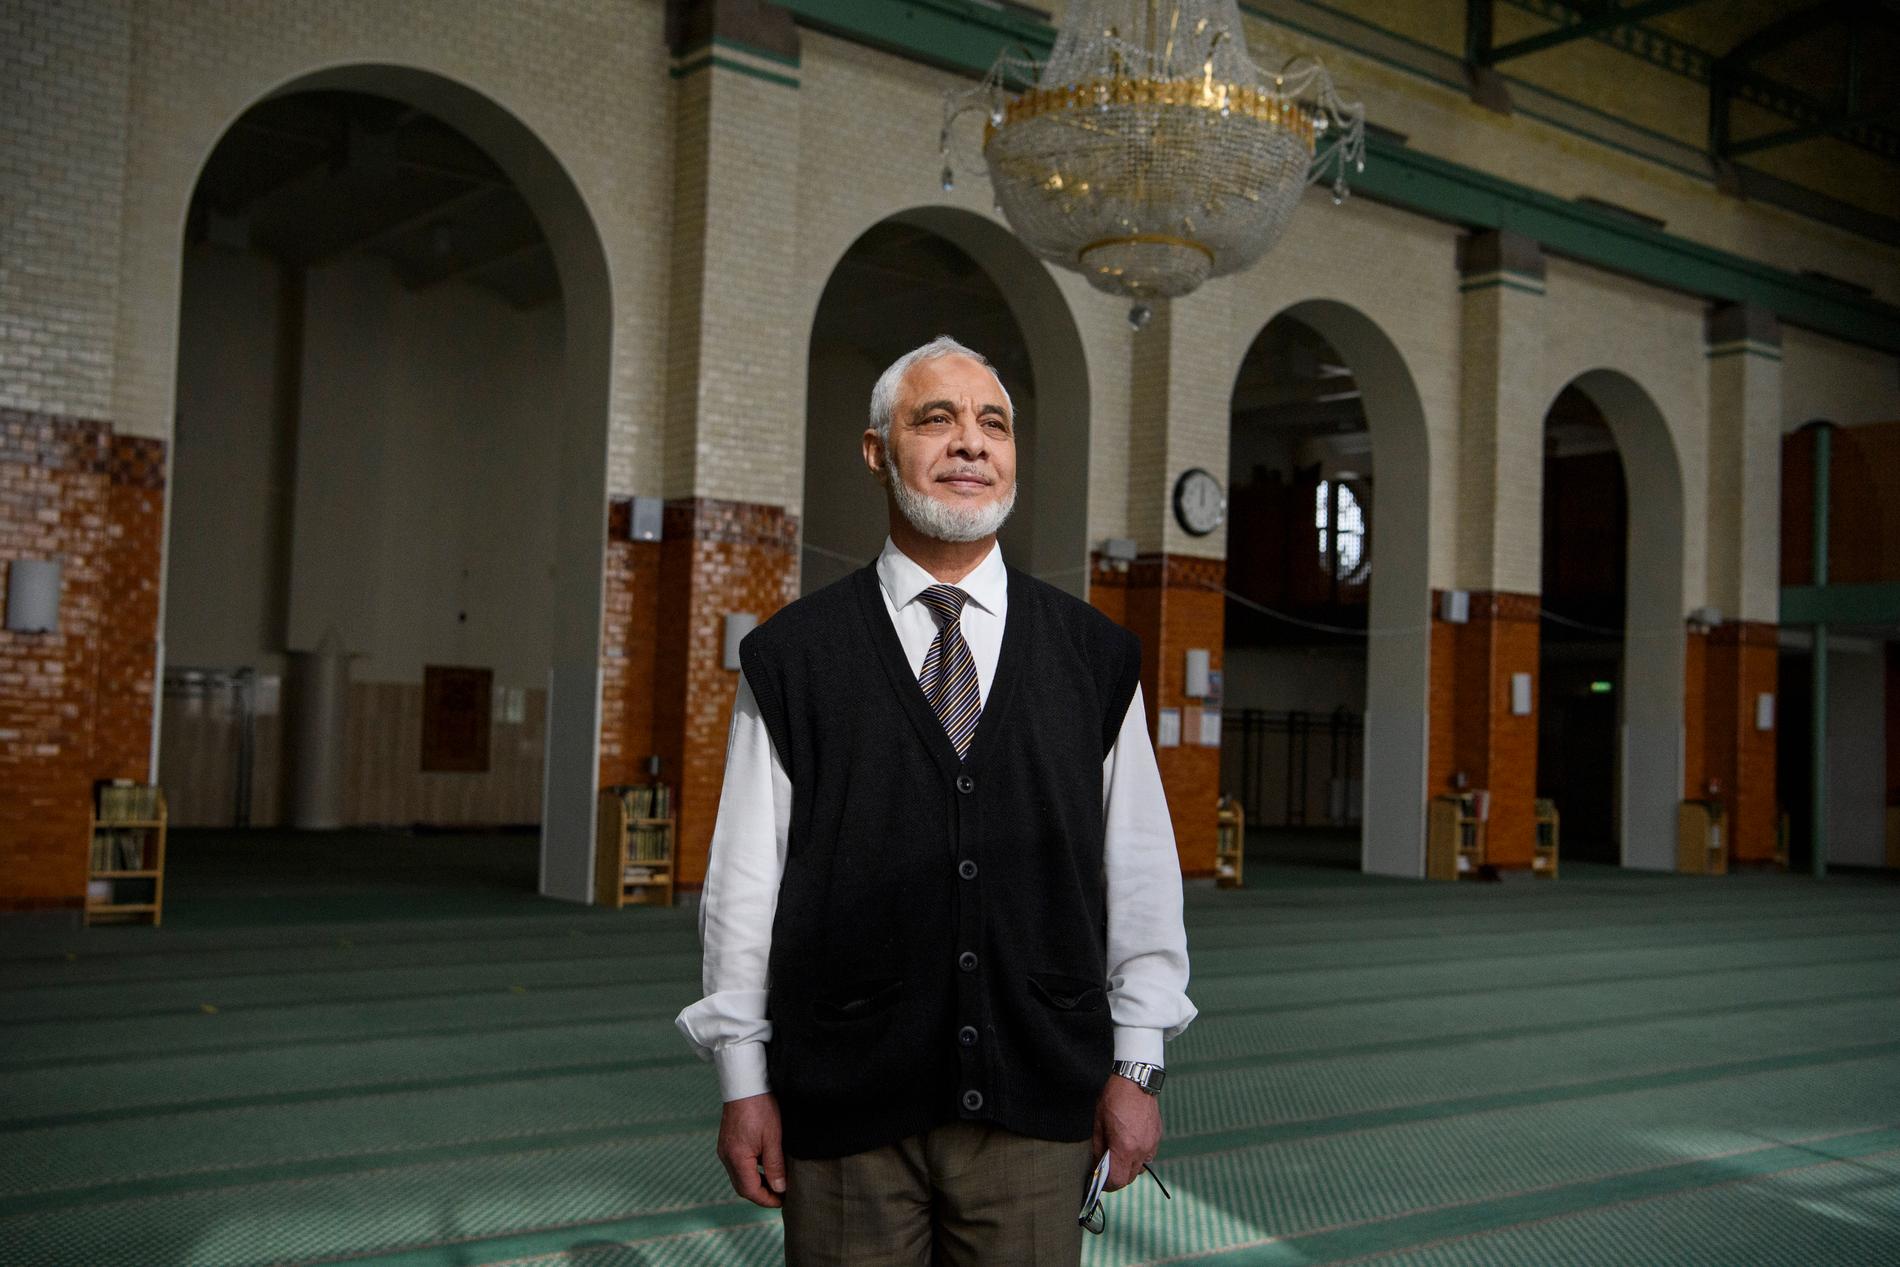 Mahmoud Khalfi, imam och direktör vid Stockholms moské, tycker det är tråkigt att se helgedomen stå tom.